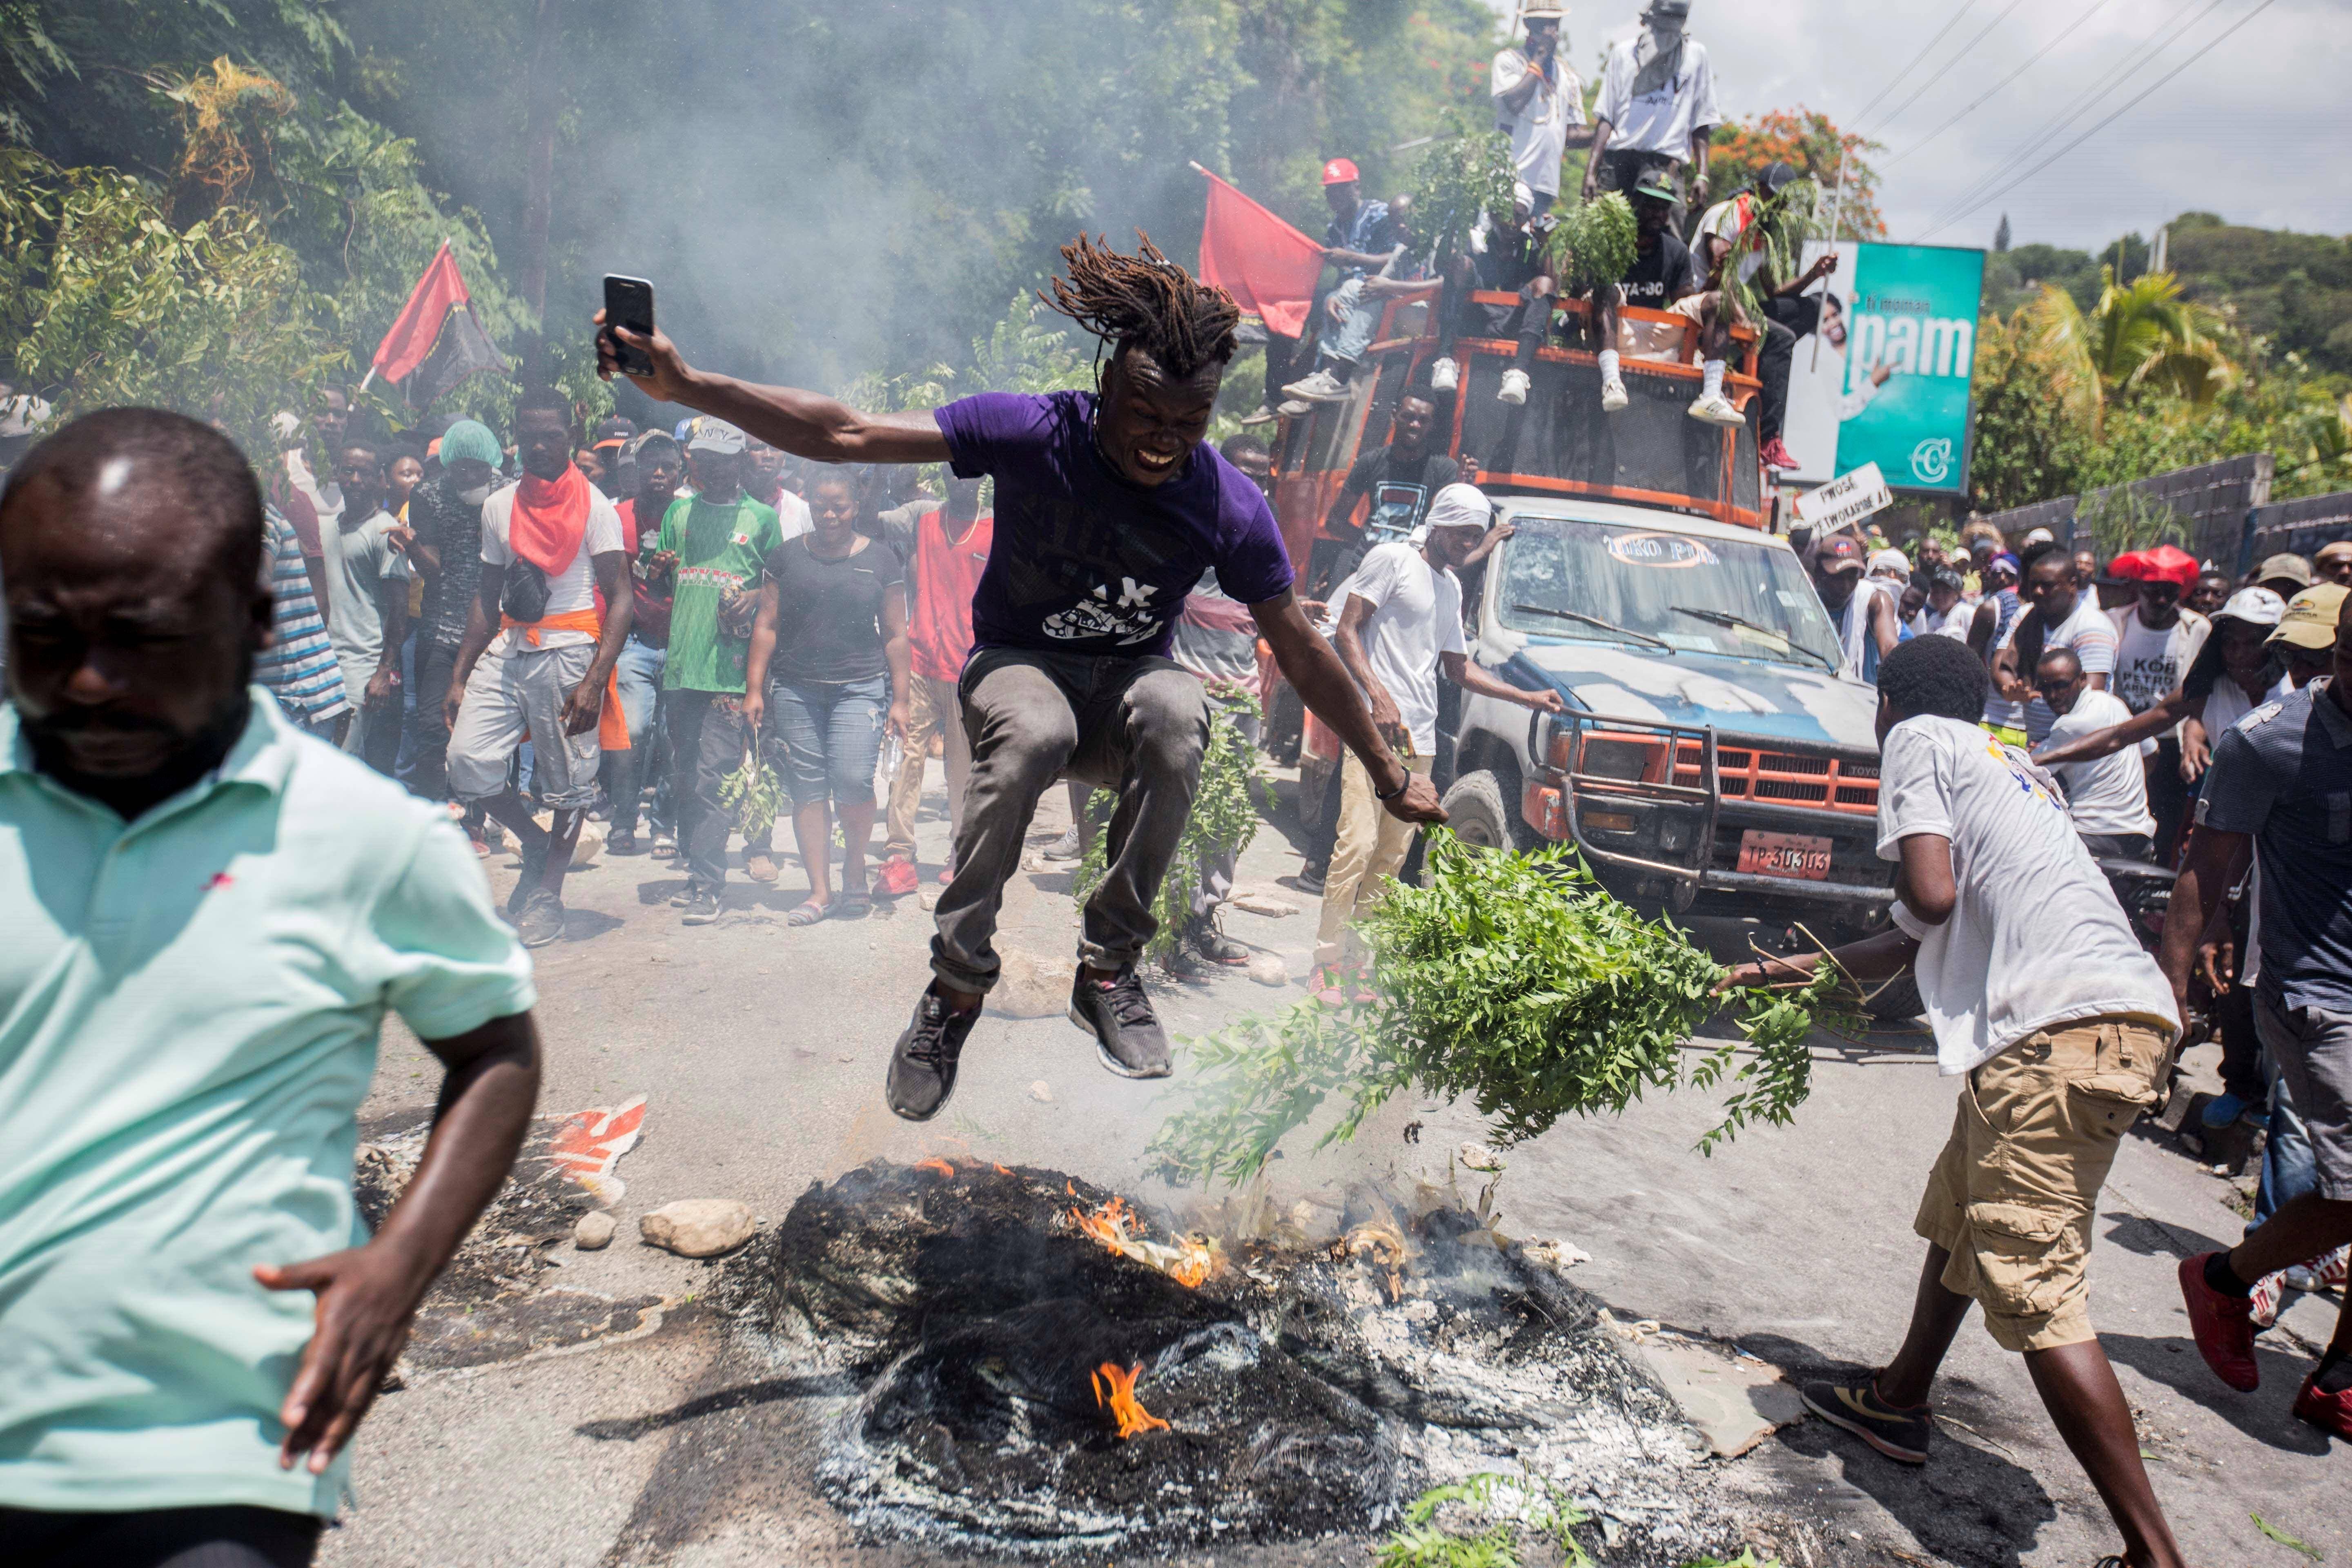 La capital de Haití se paraliza tras violentas manifestaciones que dejaron al menos dos muertos